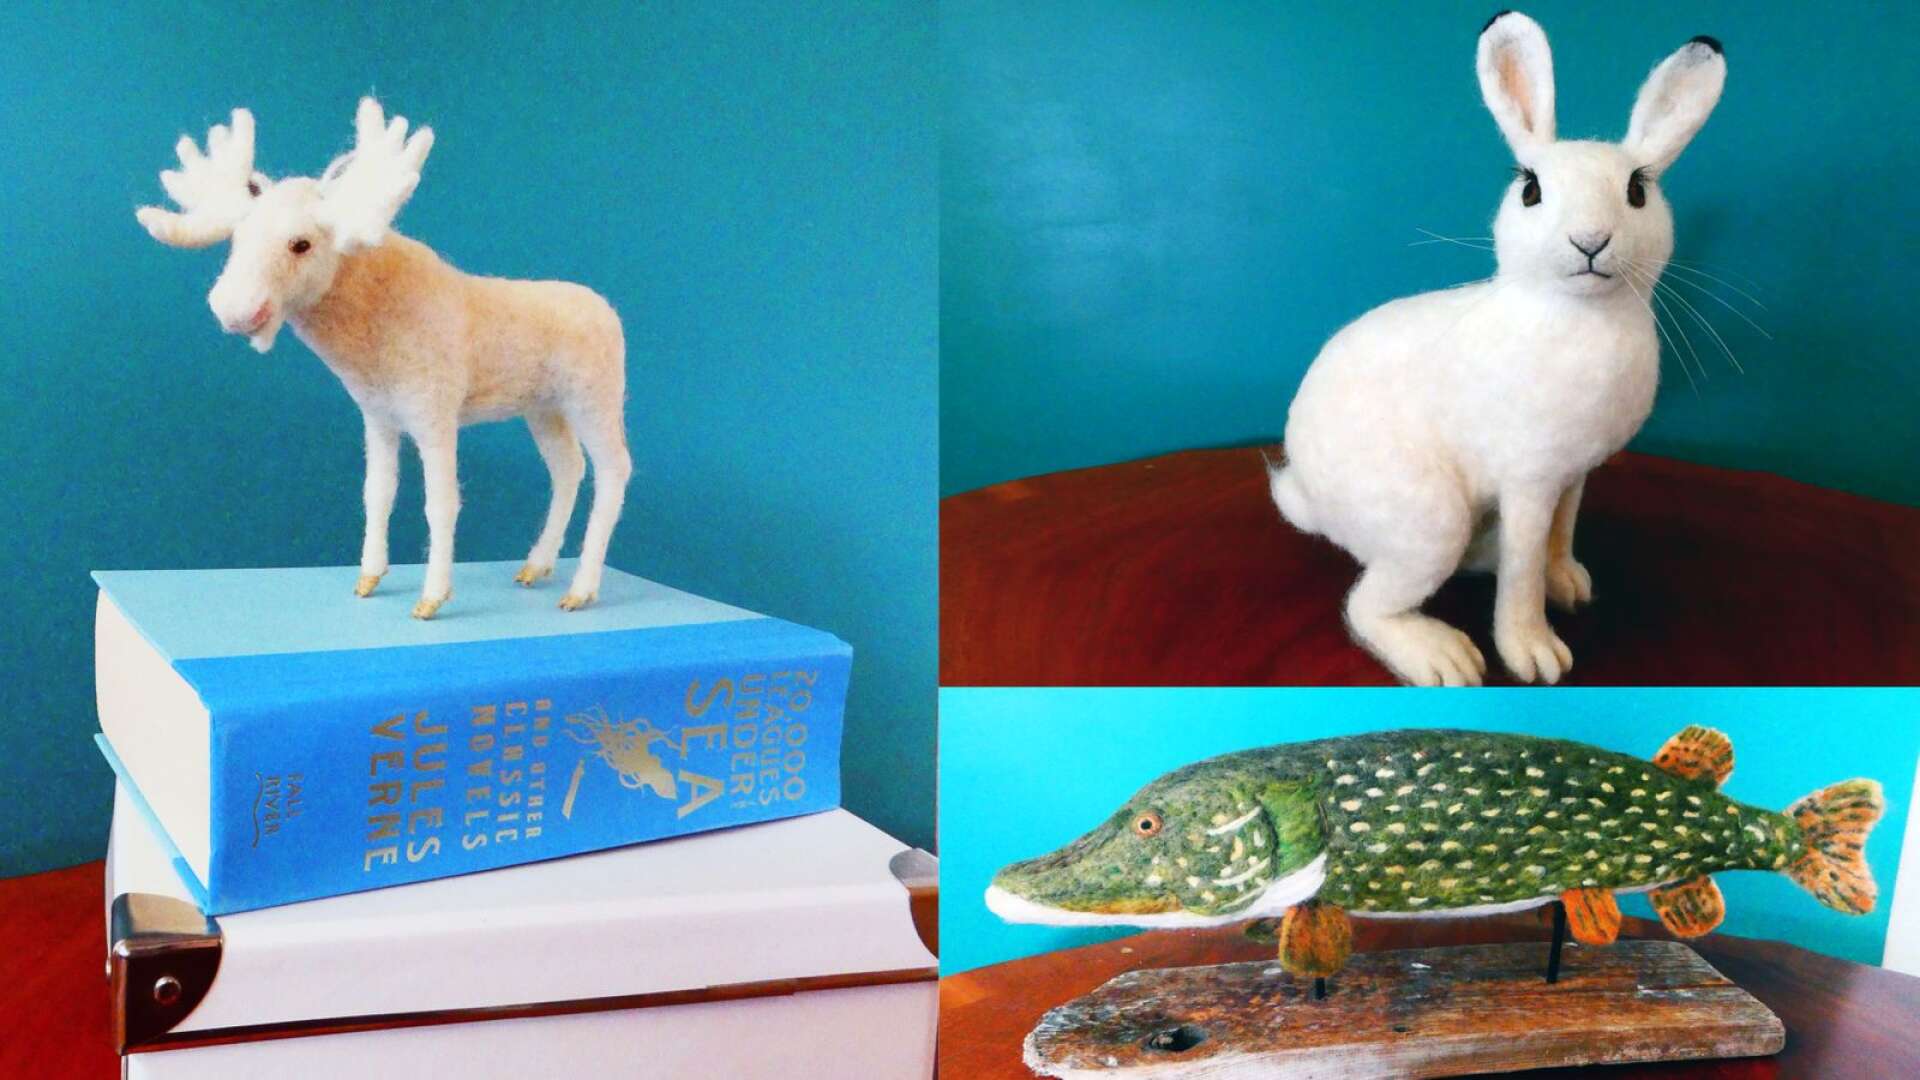 Den kända vita älgen Ferdinand i miniatyrformat, en vit skogshare och igelkott är några av djuren i utställningen.